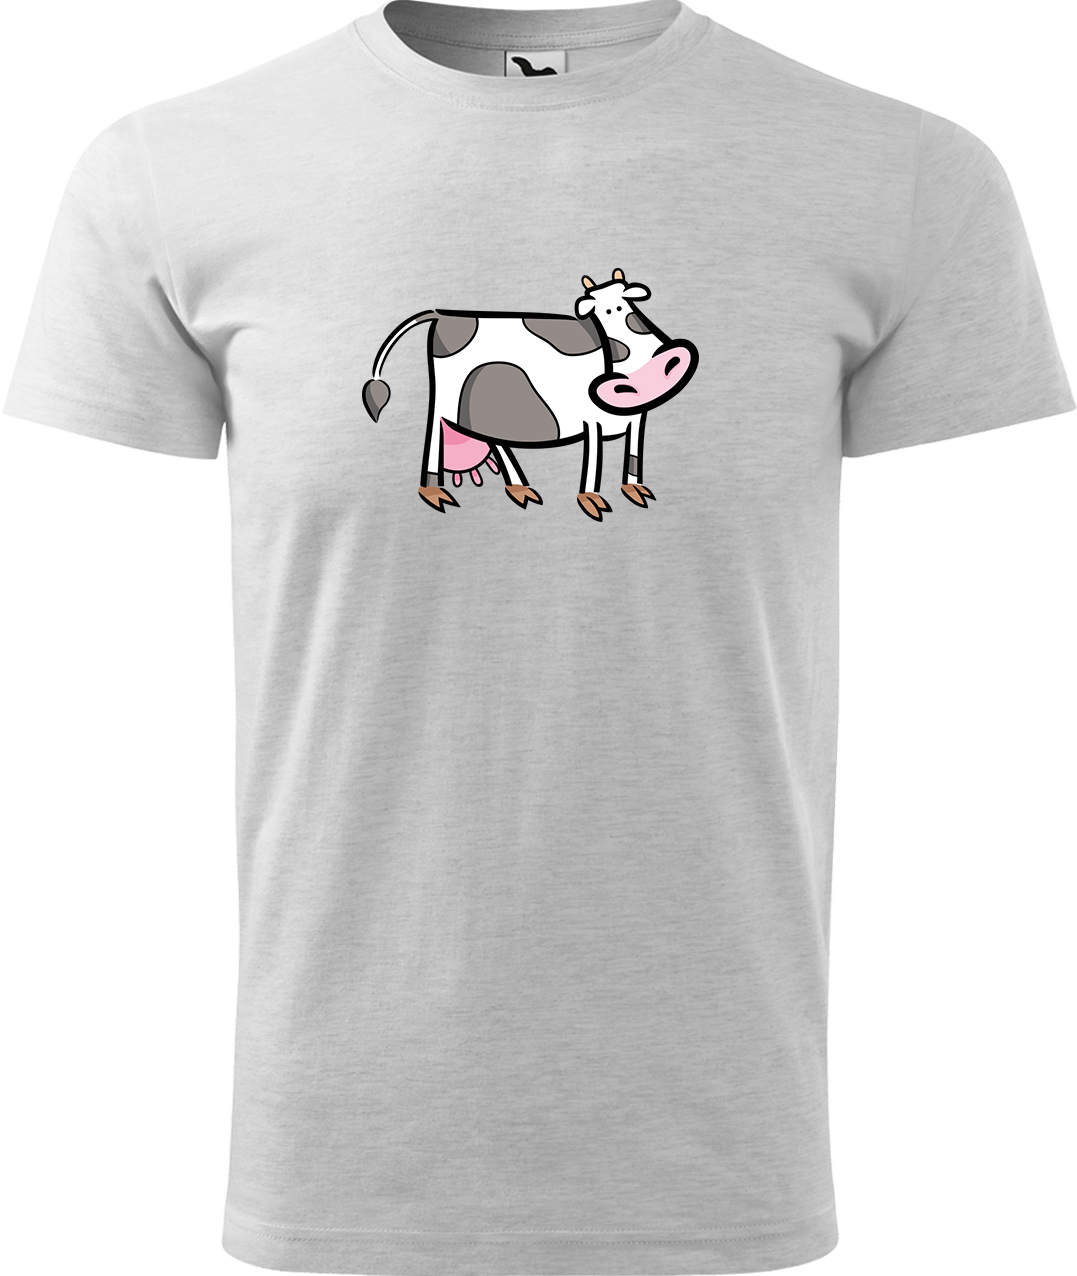 Pánské tričko s krávou - Kravička Velikost: 3XL, Barva: Světle šedý melír (03), Střih: pánský